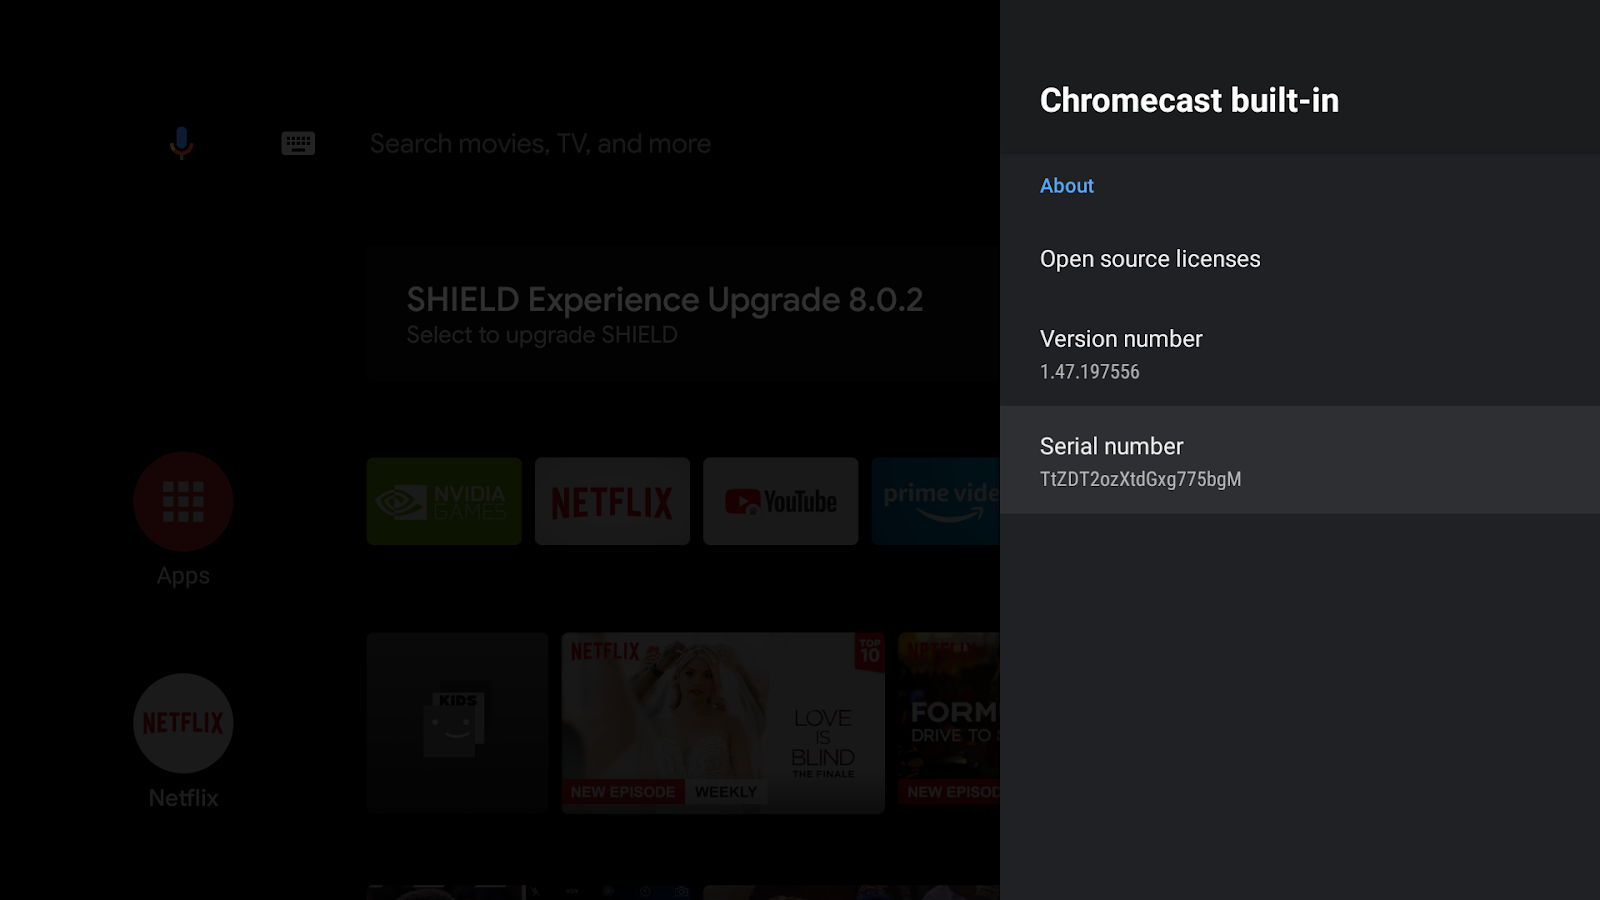 Imagem de uma tela do Android TV mostrando a tela do Chromecast built-in, o número da versão e o de série